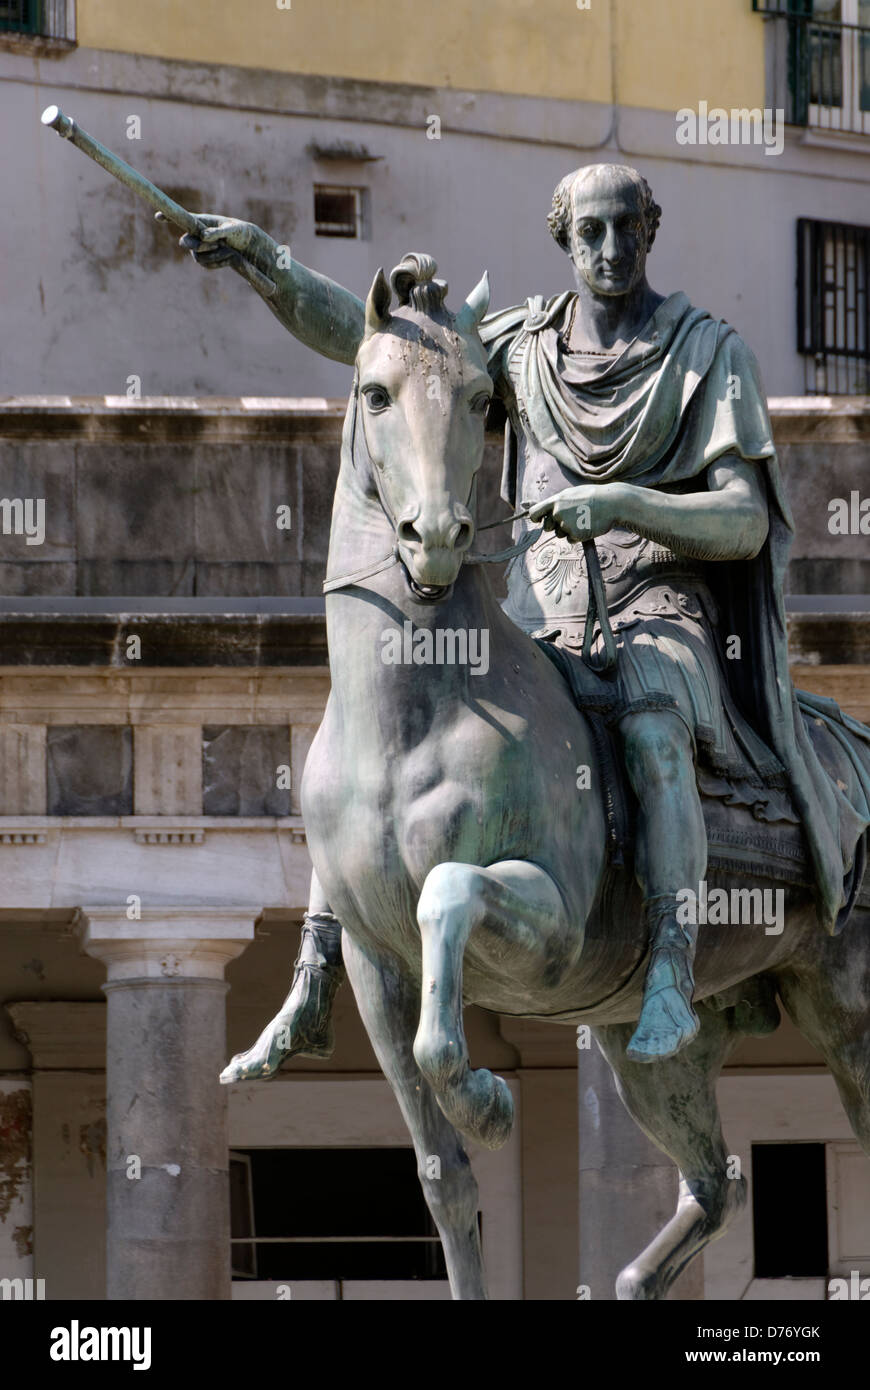 Nápoles. Italia. Monumento ecuestre dedicado rey Borbón Ferdinand I en frente de la iglesia de San Francesco di Paola. Foto de stock